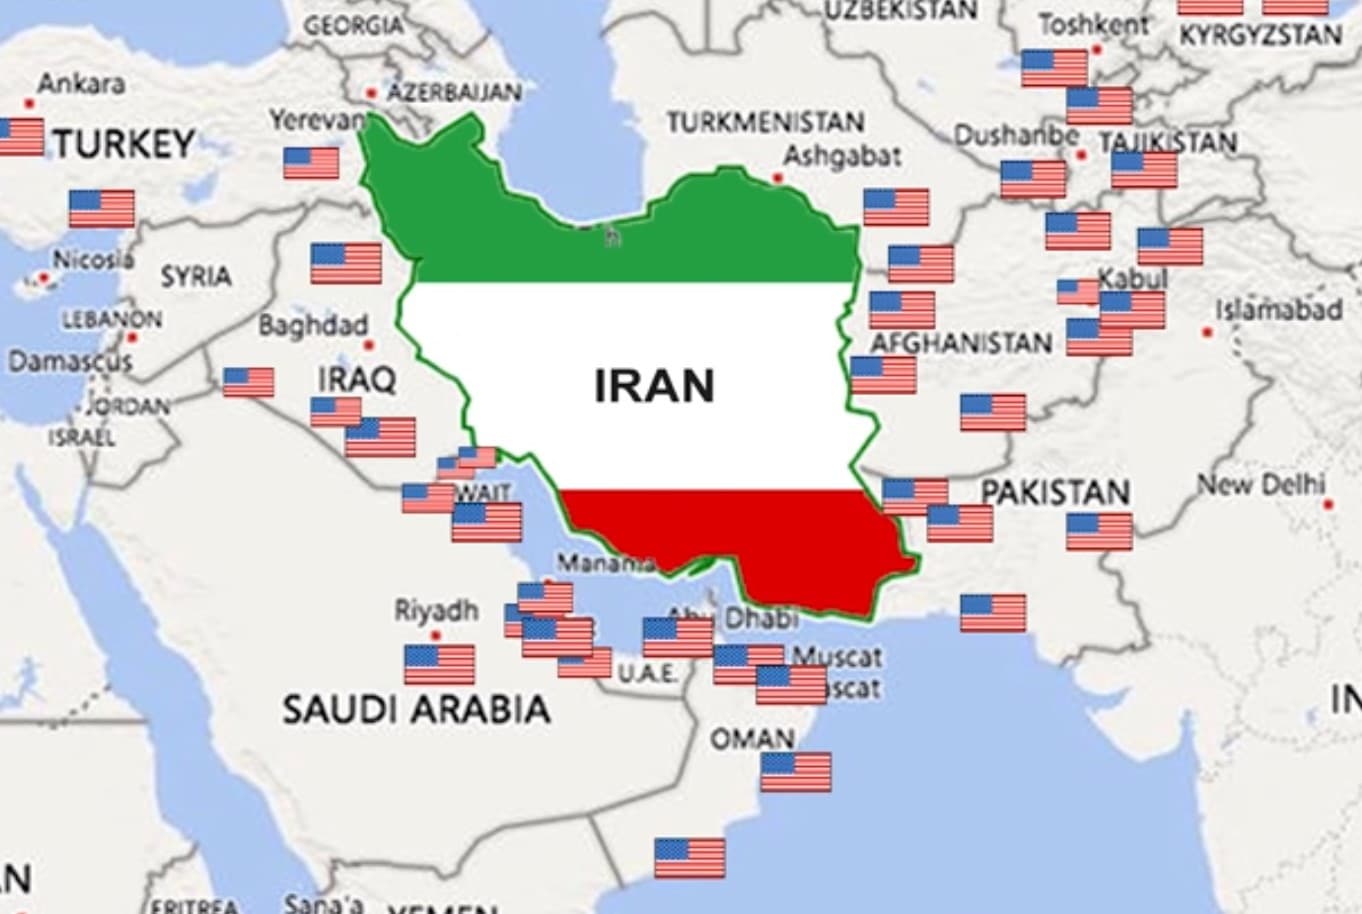 Rusland zal Iran helpen verdedigen bij een aanval van de Amerikanen